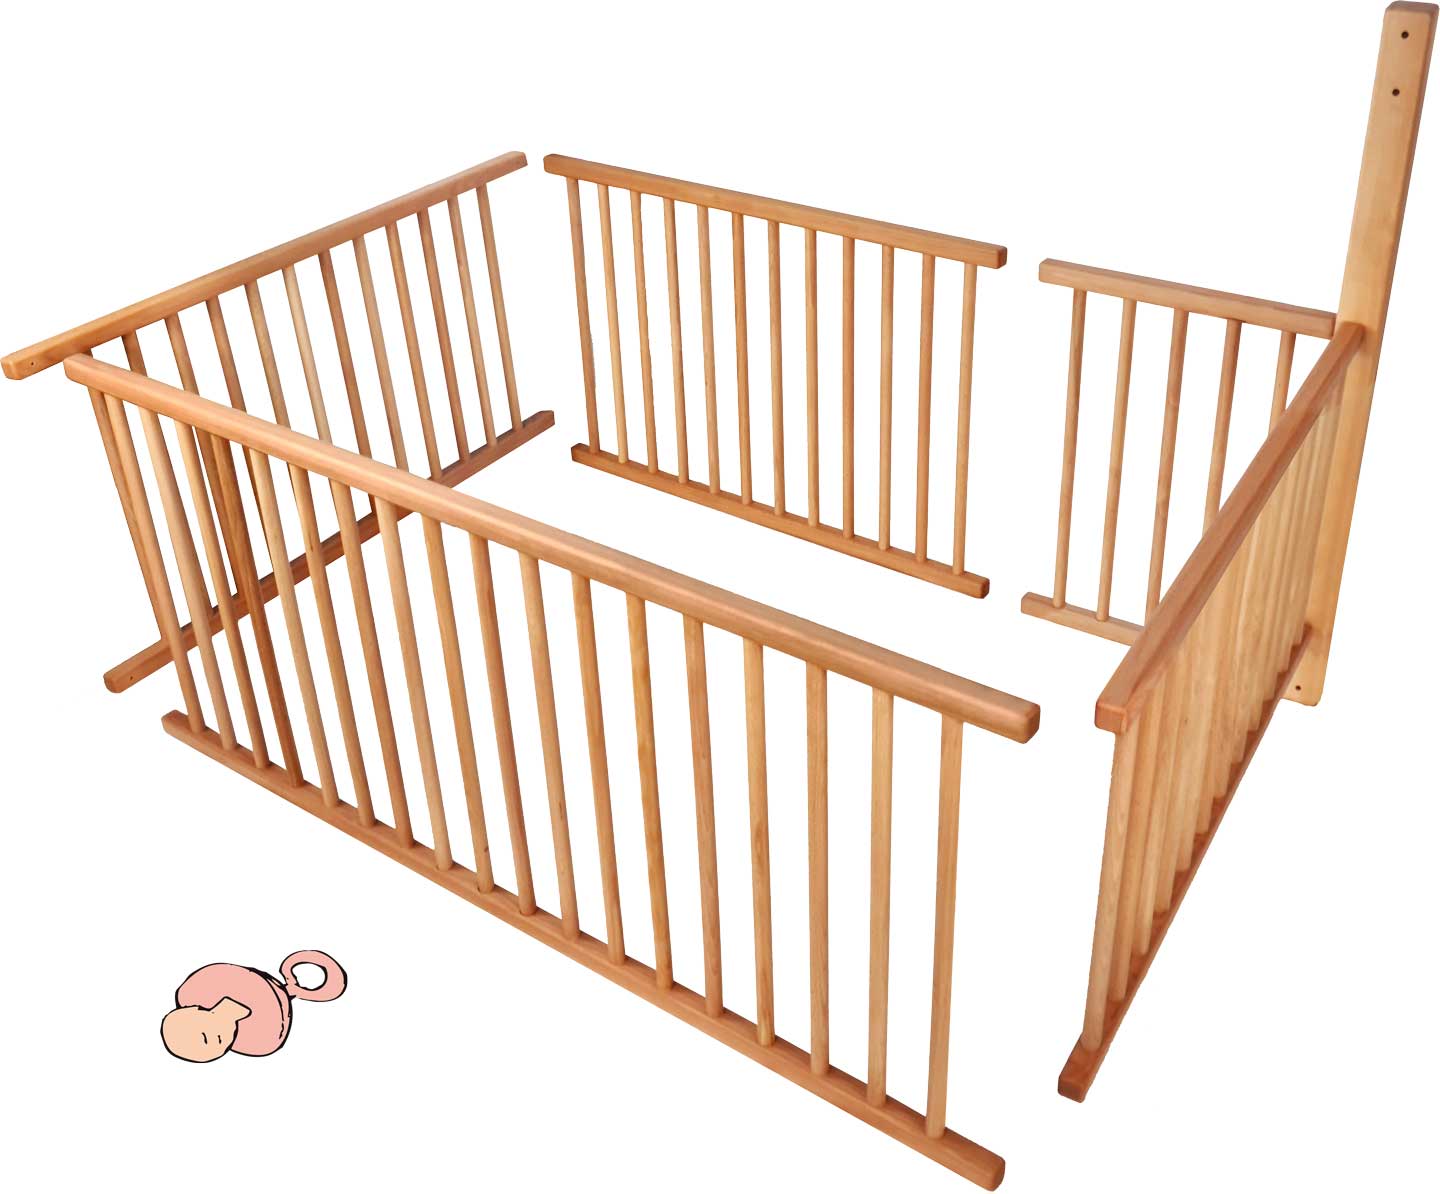 Kūdikių tinklelių rinkinys dviaukštei lovai su standartinėmis kojomis (196 cm) ir kopėčių padėtis A 3/4 gulimojo paviršiaus, įskaitant papildomai reikalingą siją**